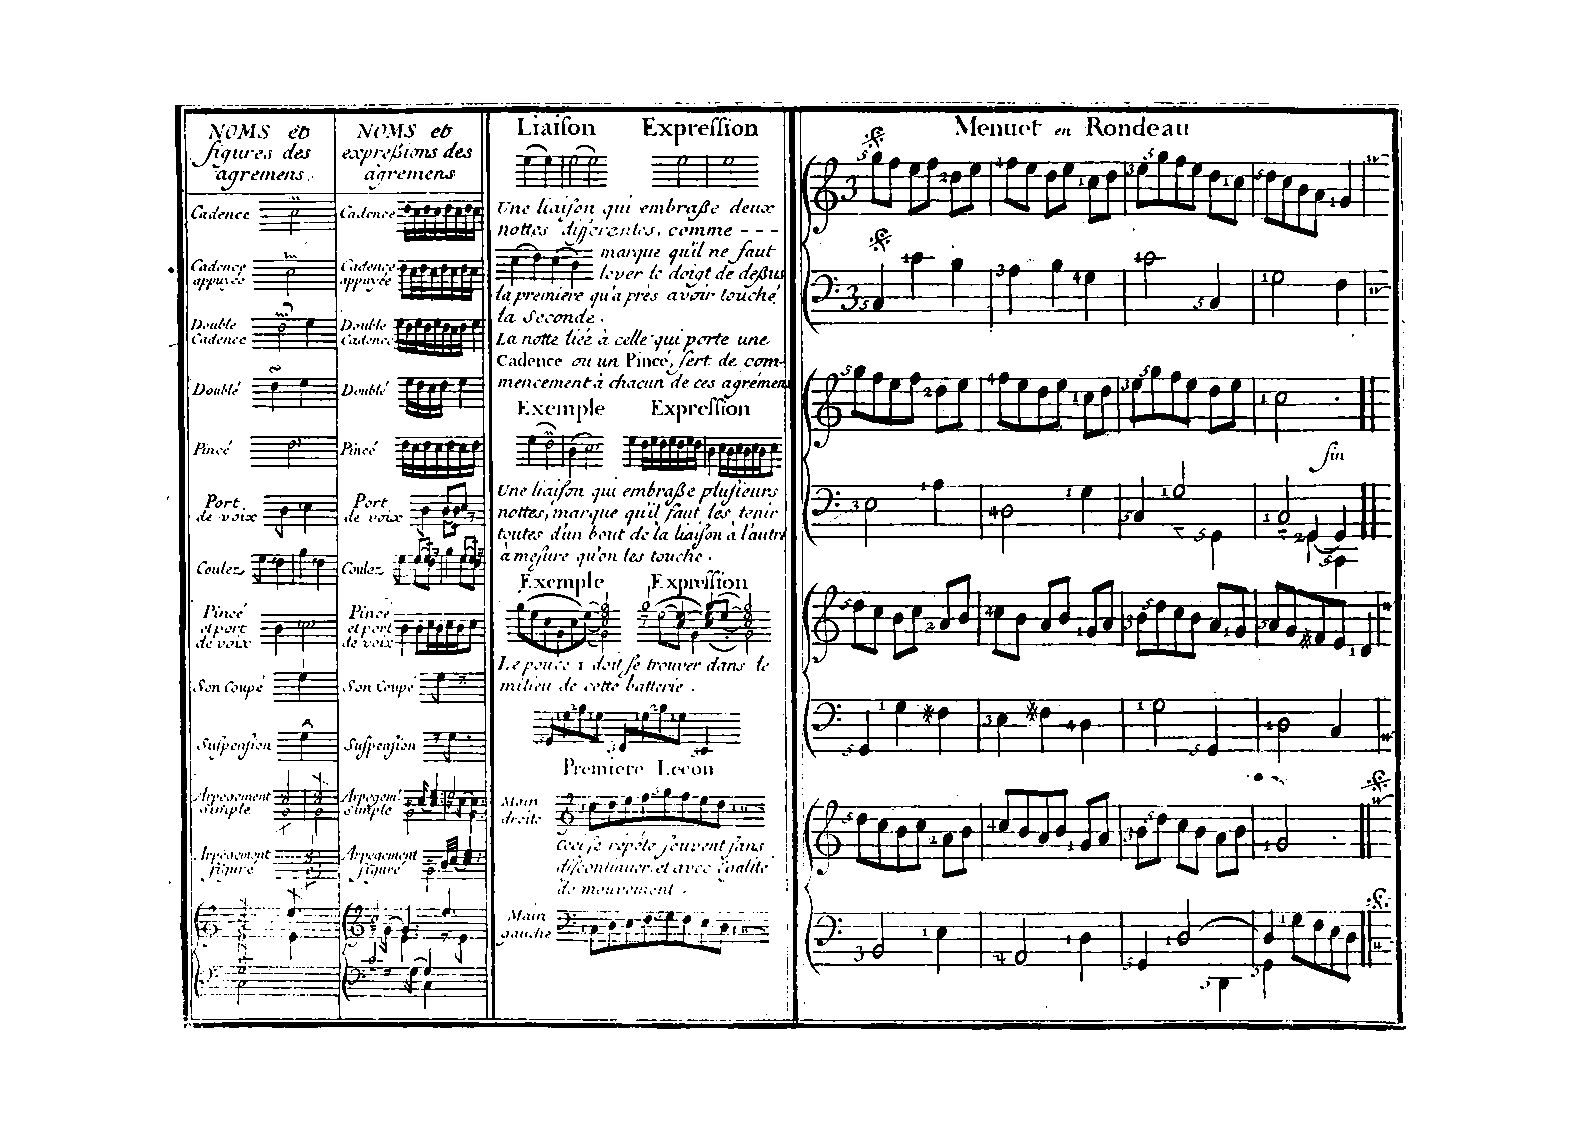 ジャン=フィリップ・ラモーの「クラヴサン曲集と運指法」装飾音表